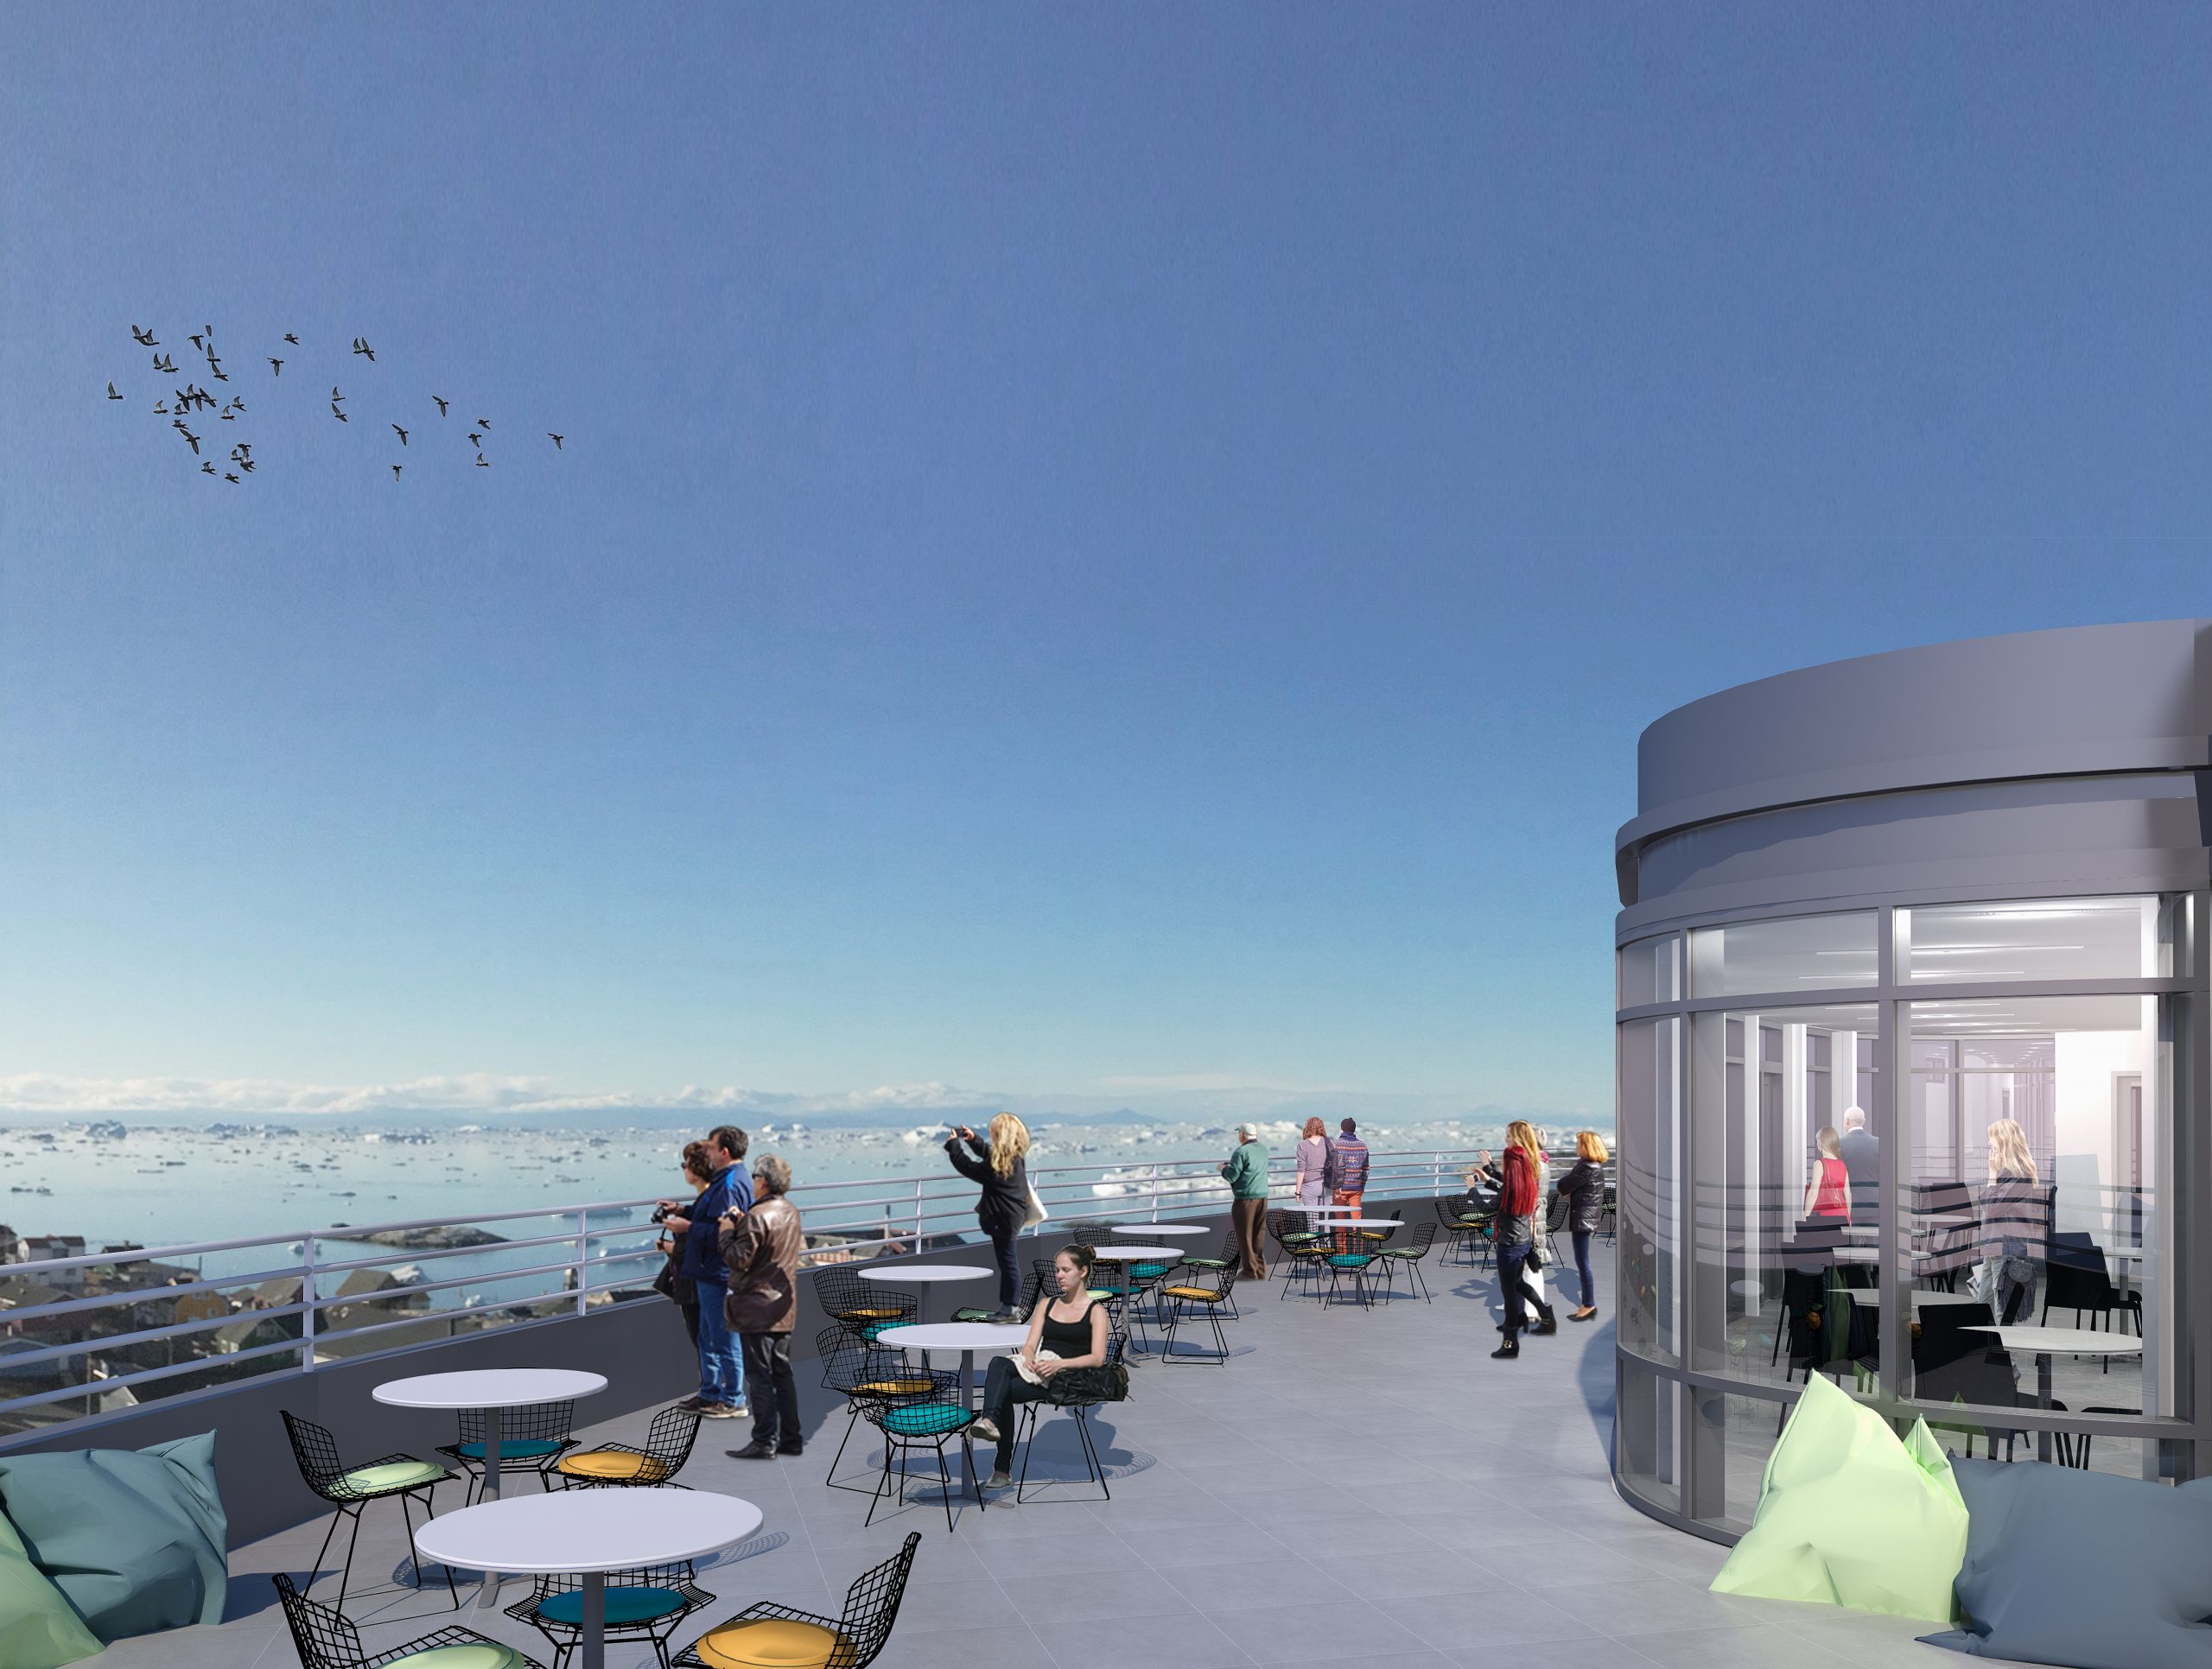 2021 startet erstes Best Western Hotel in Grönland